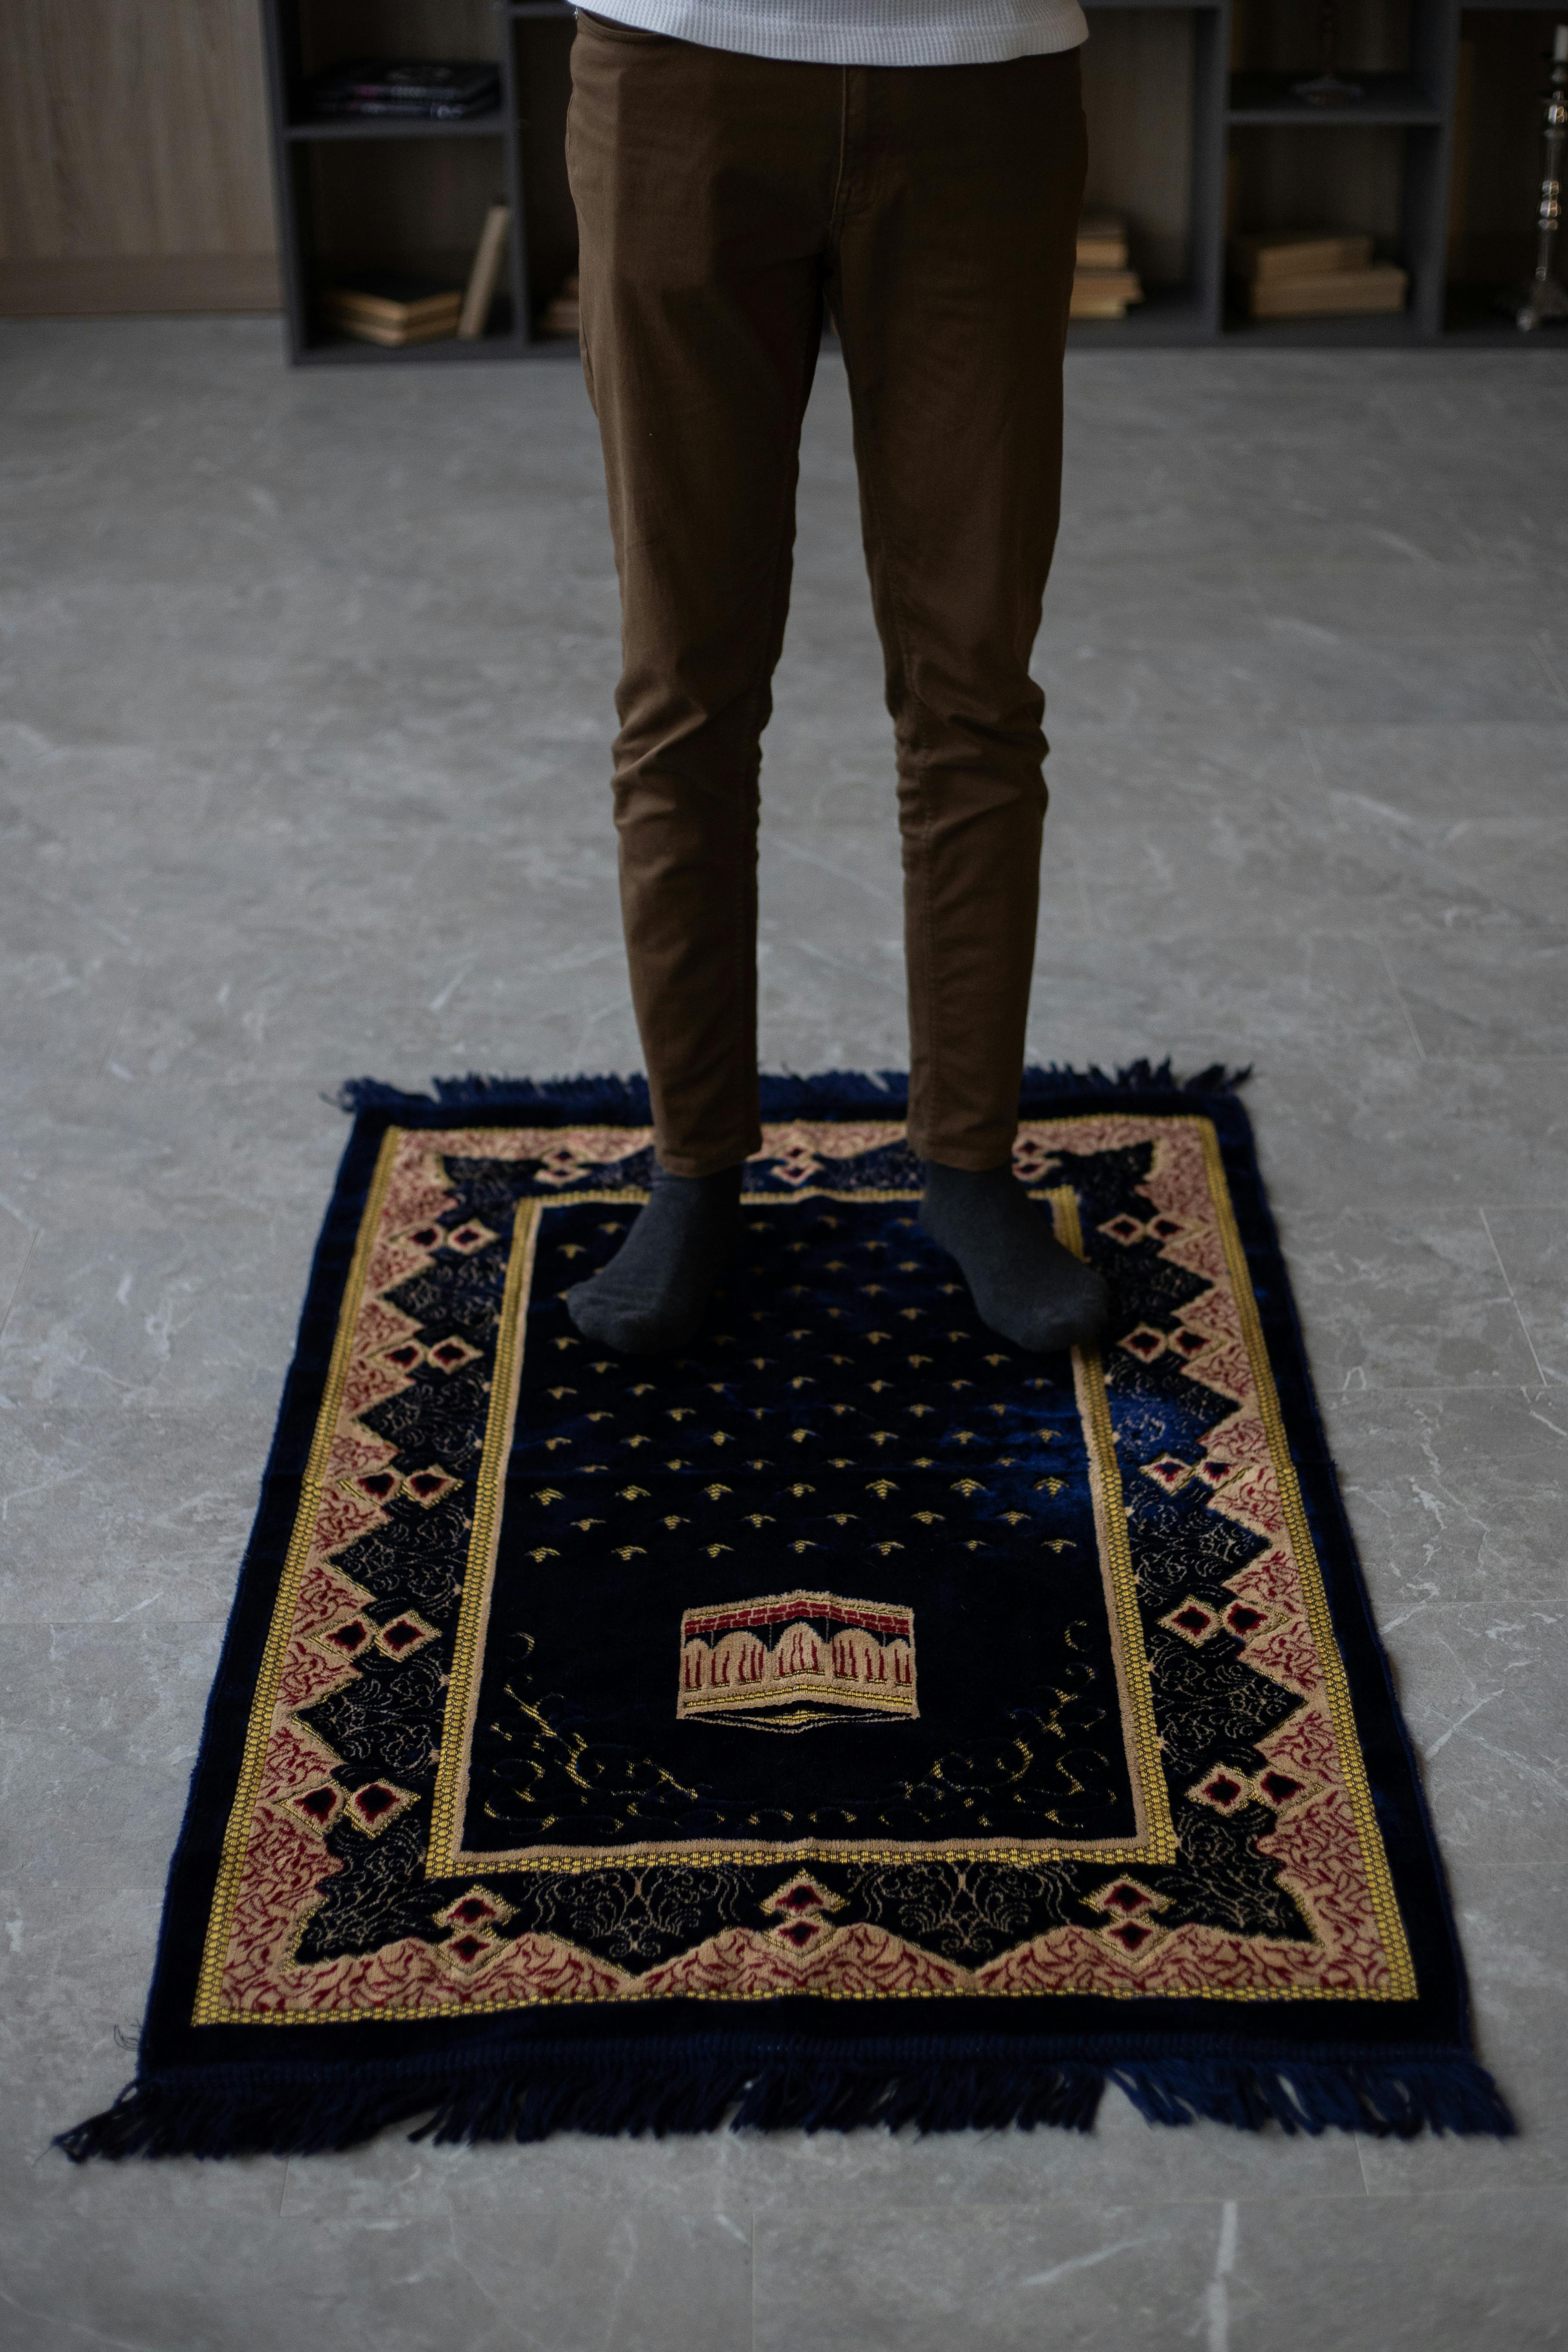 crop man standing on mat before praying at home